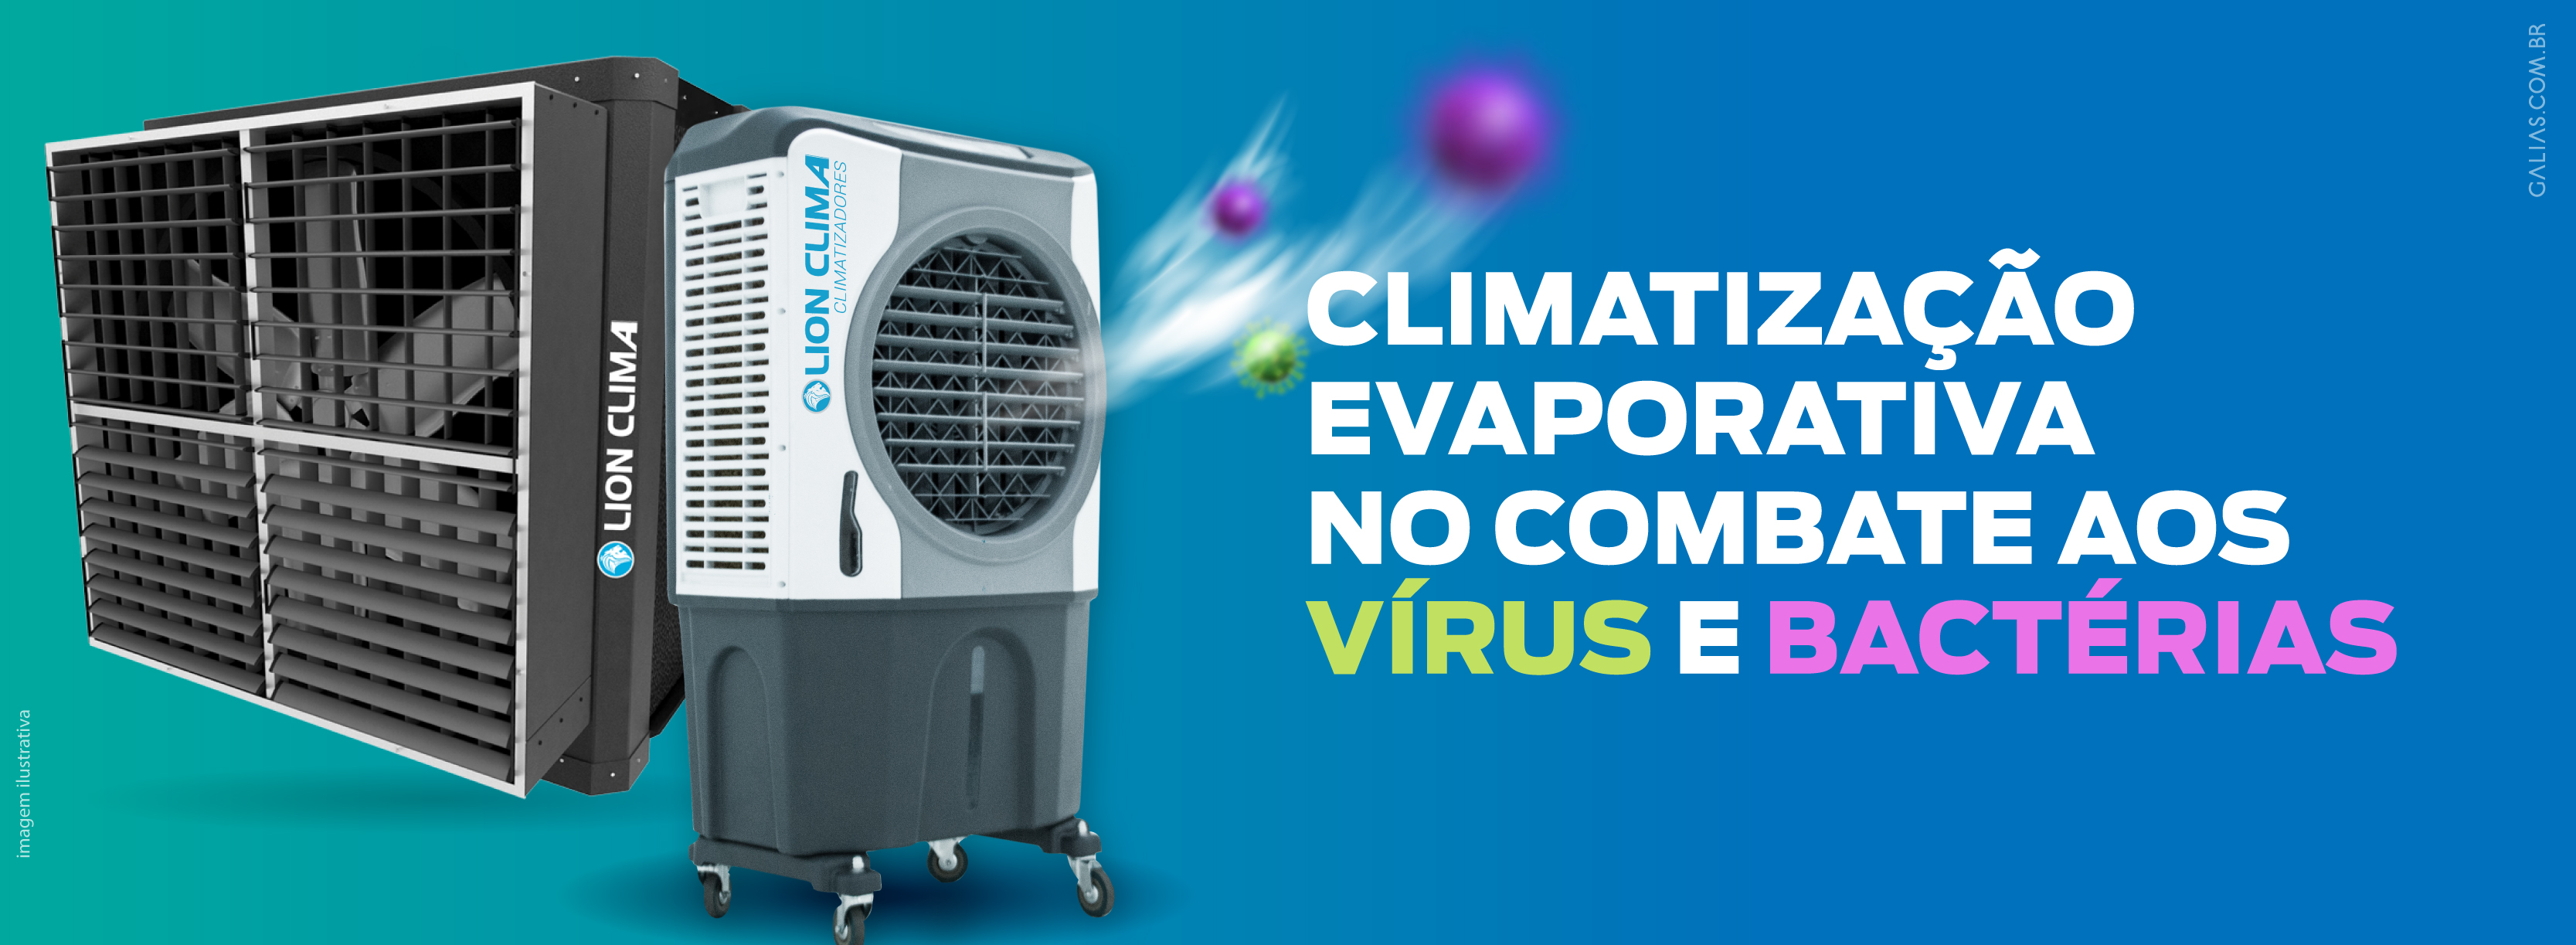 Climatização Evaporativa no combate aos vírus e bactérias